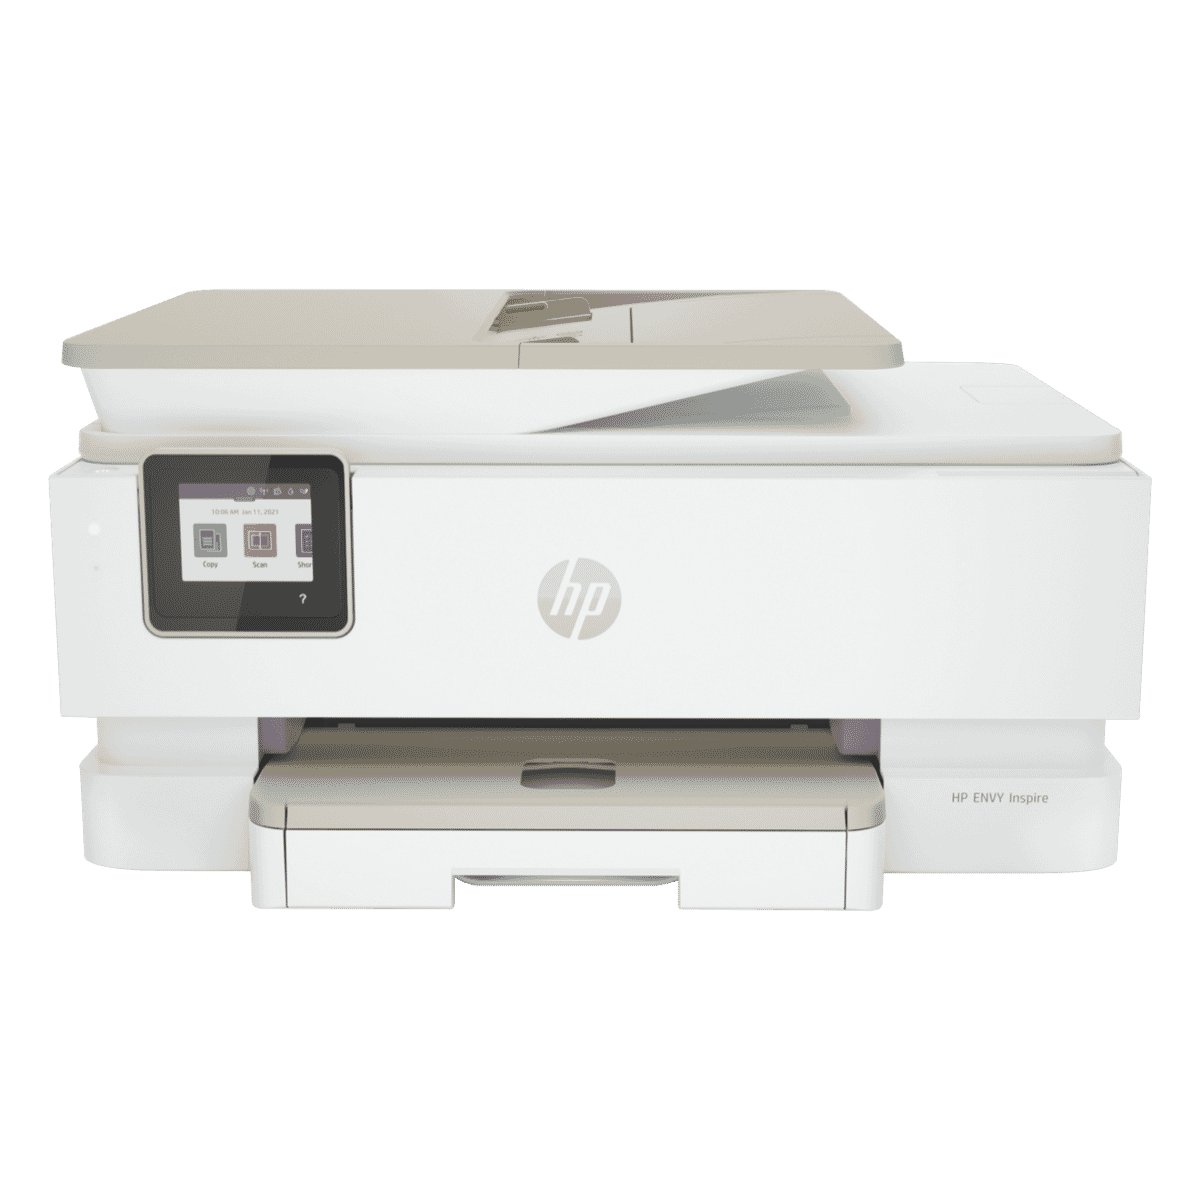 HP Envy Inspire 7220e AllInOne Printer Bundle w/6 Months 